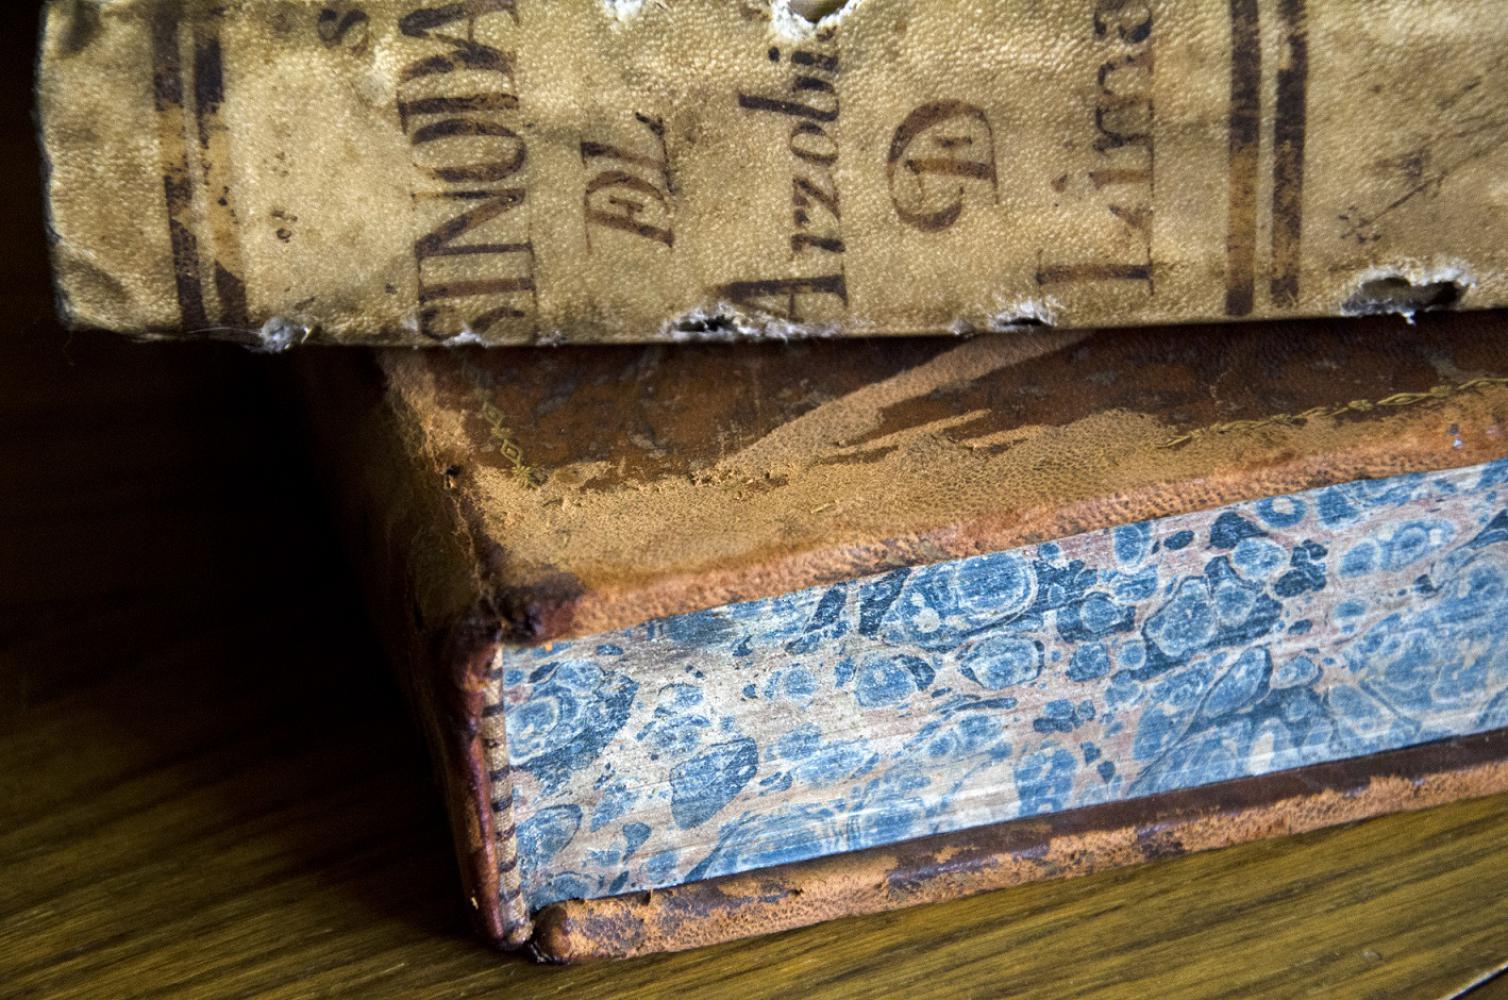 Libros del siglo XVIII encuadernados en cuero y papel marmoleado, Col. Americana, detalle (2016).